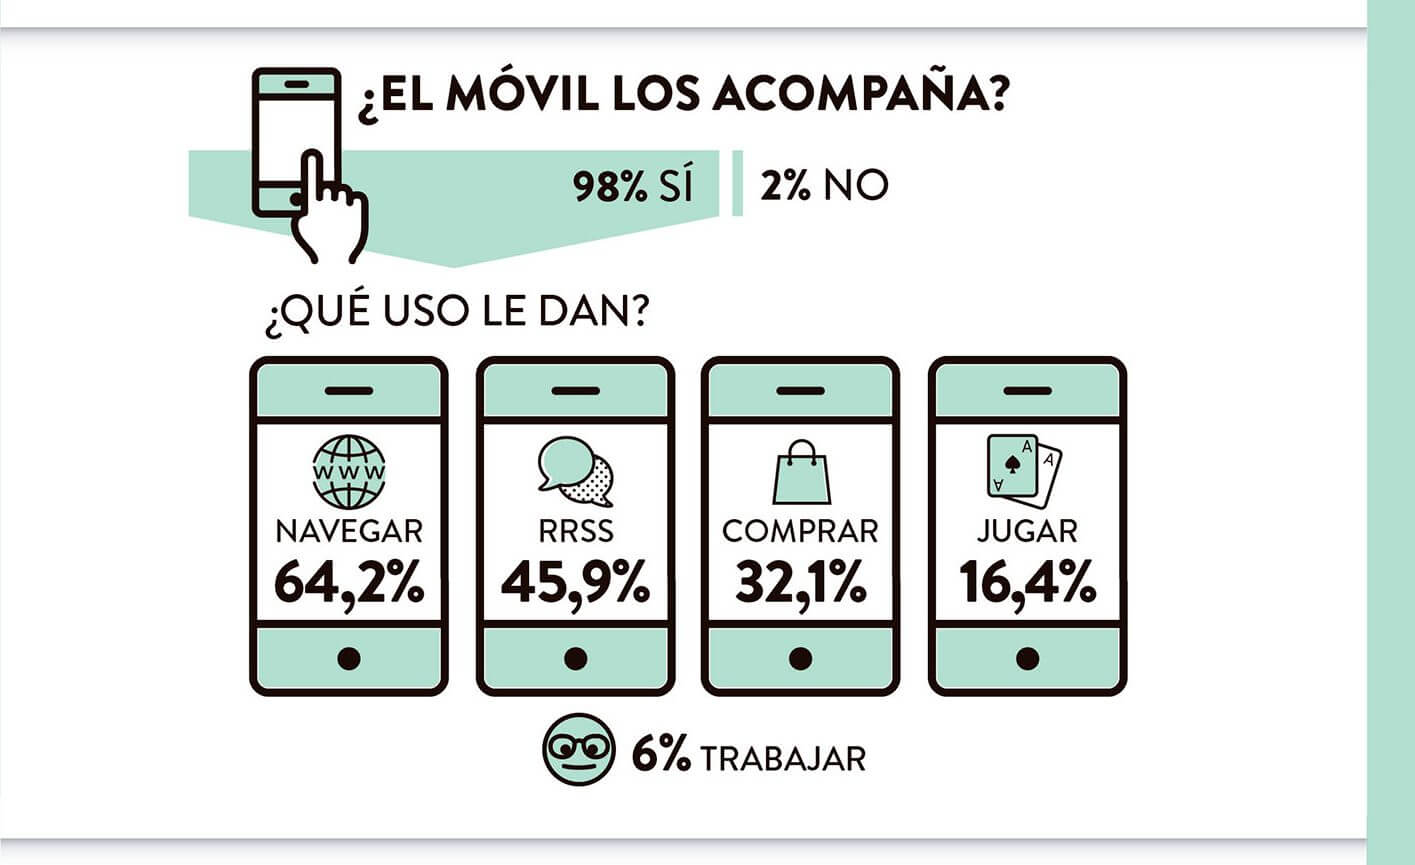 1 de cada 3 españoles hace sus compras de moda desde el móvil.